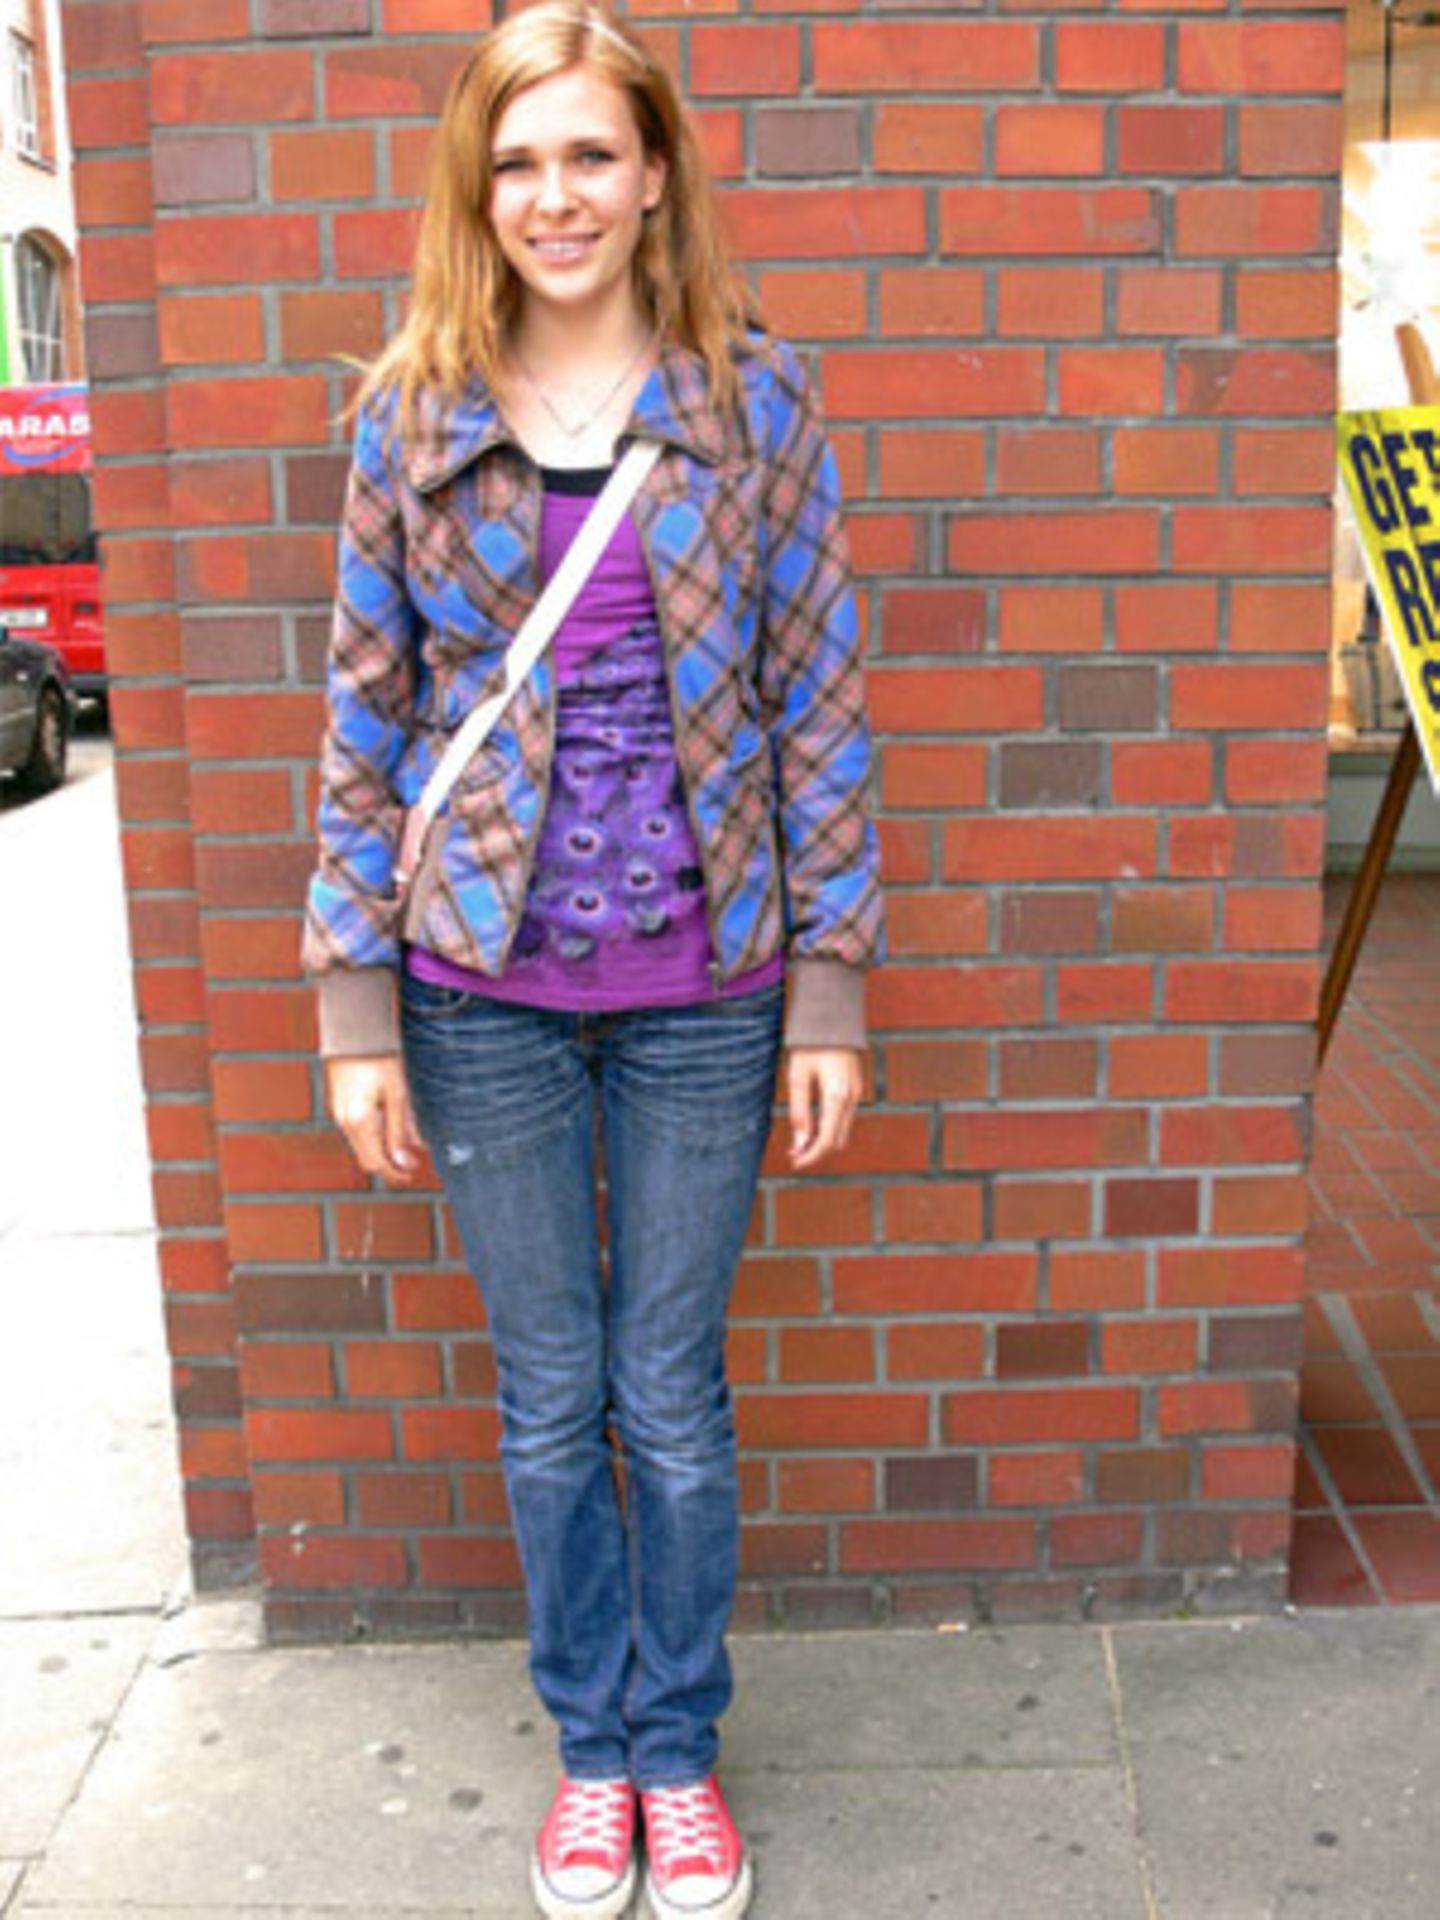 Auch Lisa, 14, hat das richtige Gespür für den Mustermix-Look. Sie entschied sich für eine blau-braun karierte Jacke (H&M) über einem lilafarbenen Top (H&M) mit Pfauenfeder-Print. Die roten Turnschuhe (Converse) bringen noch mehr Farbe ins Spiel.